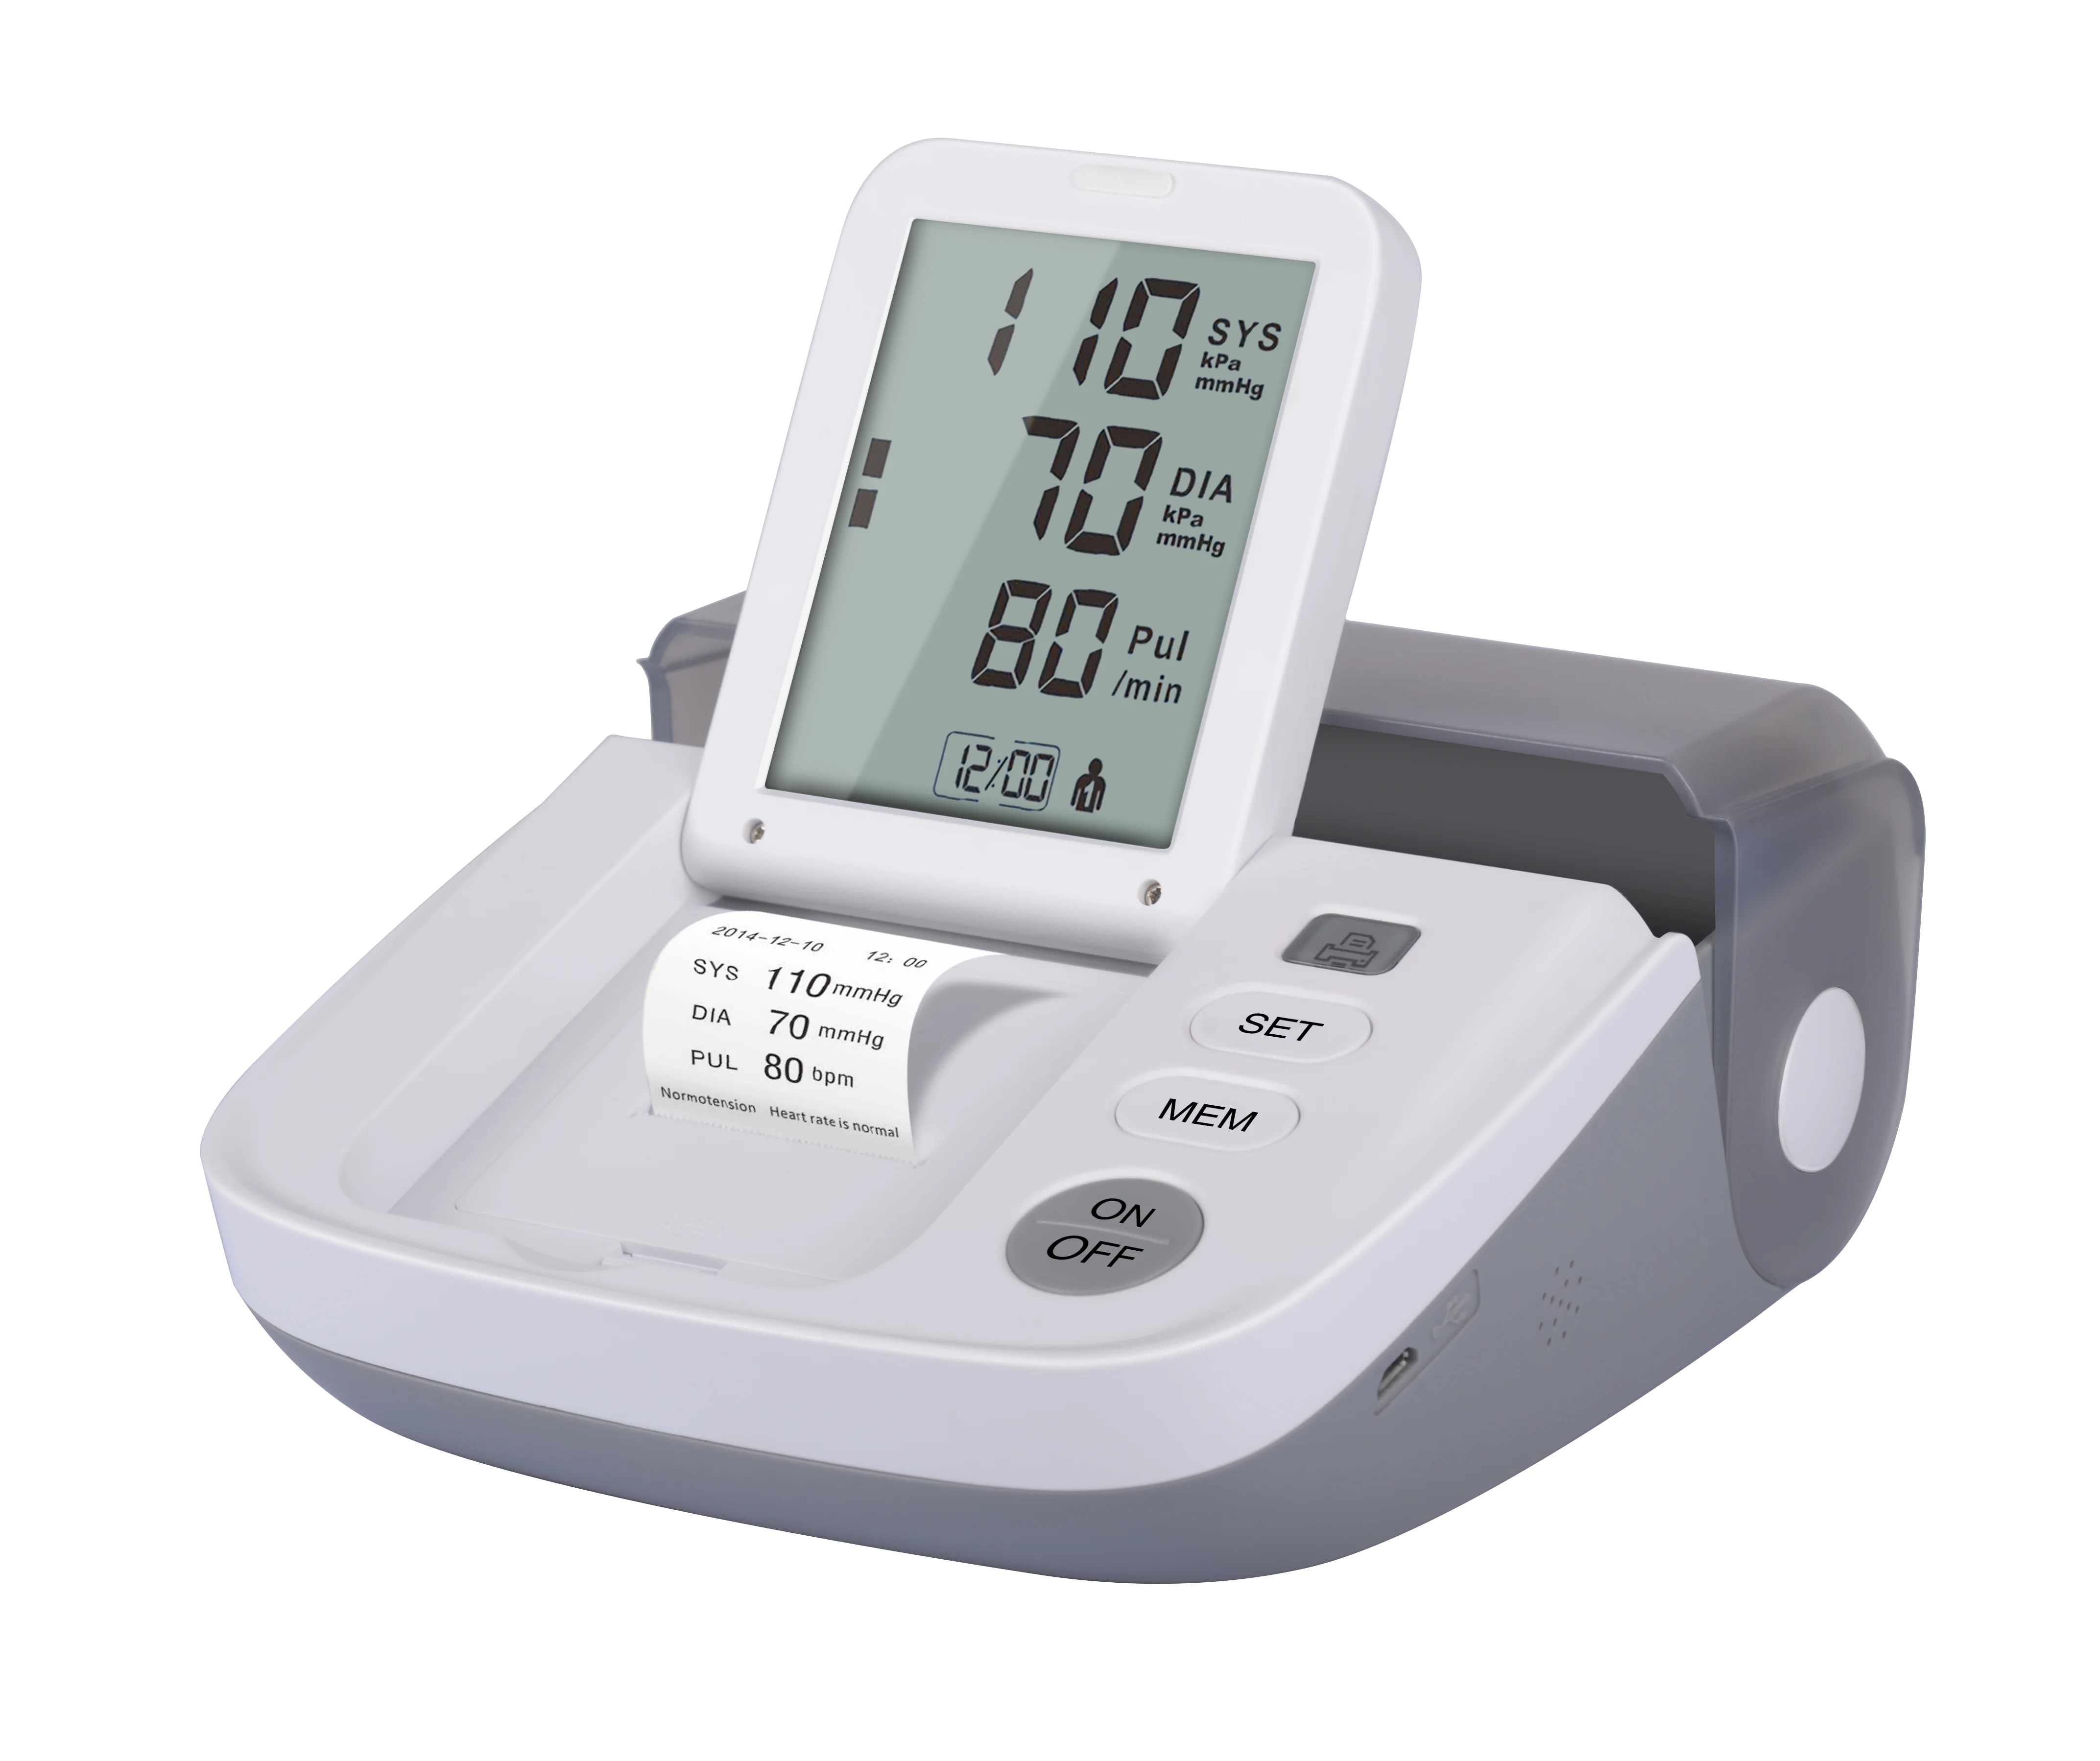 TaoQi Upper Arm Blood Pressure Monitor, Digital BP Machine for Home Use, 2  Users